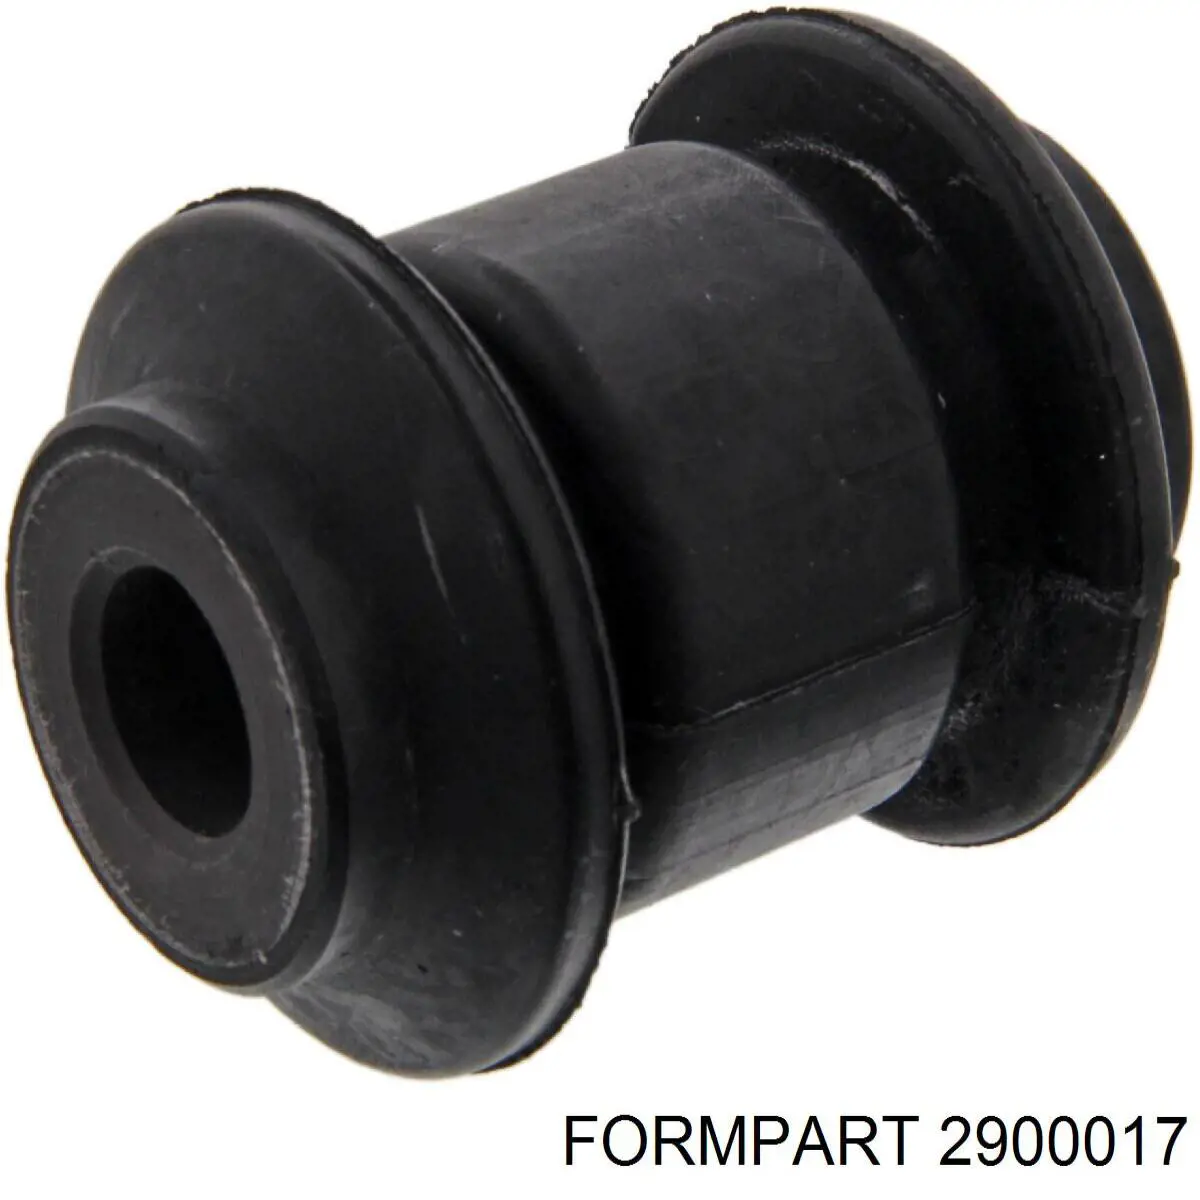 2900017 Formpart/Otoform silentblock de suspensión delantero inferior